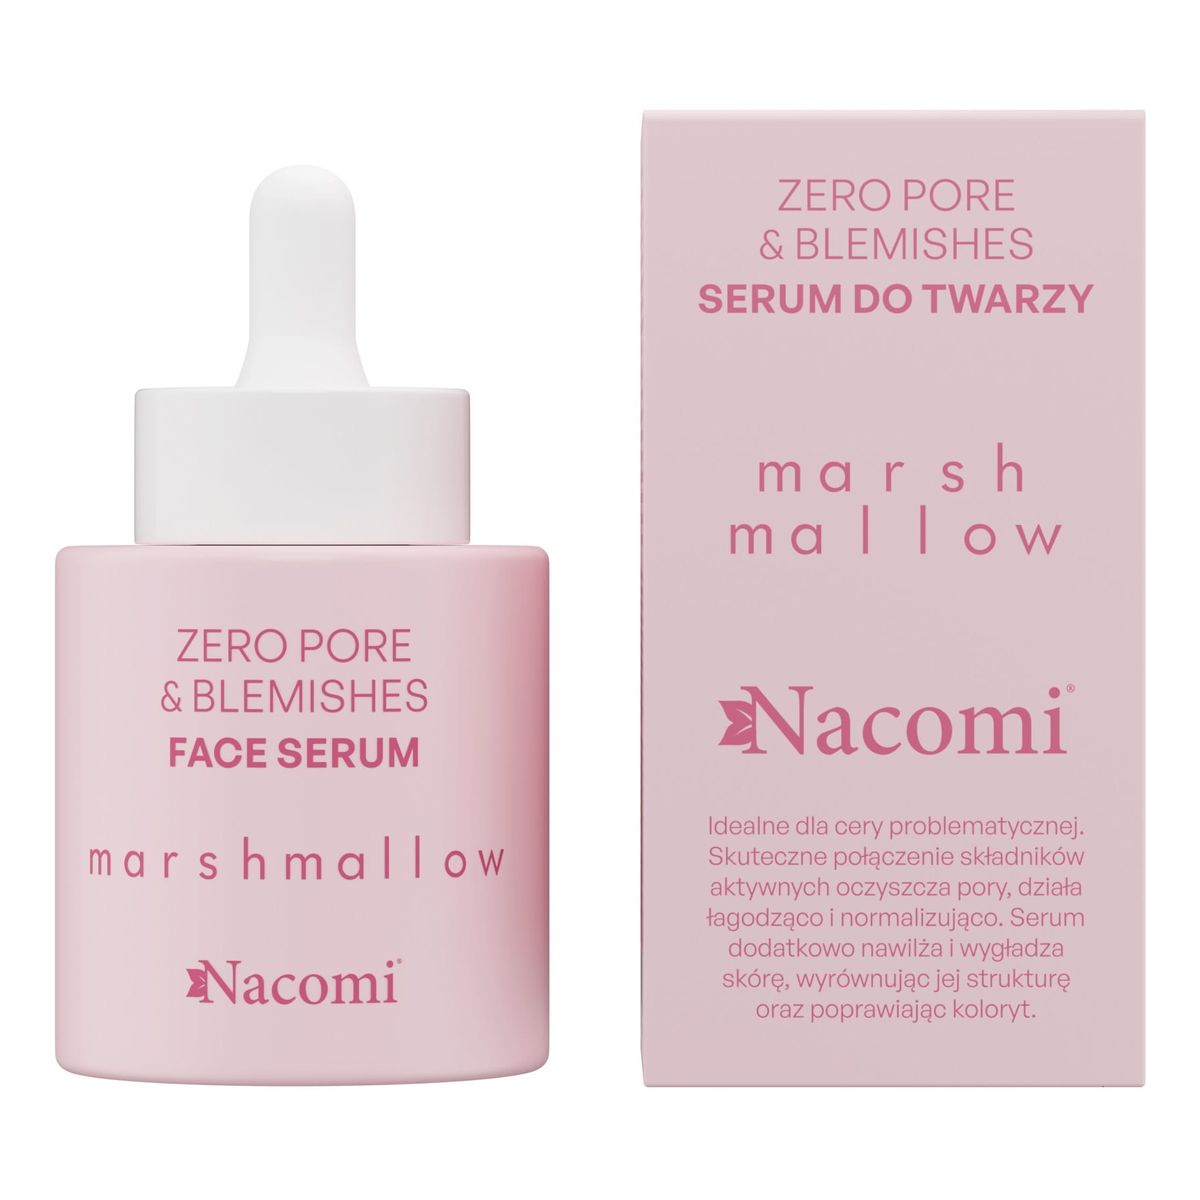 Nacomi Zero pore & blemishes Serum do twarzy Marshmallow 30ml